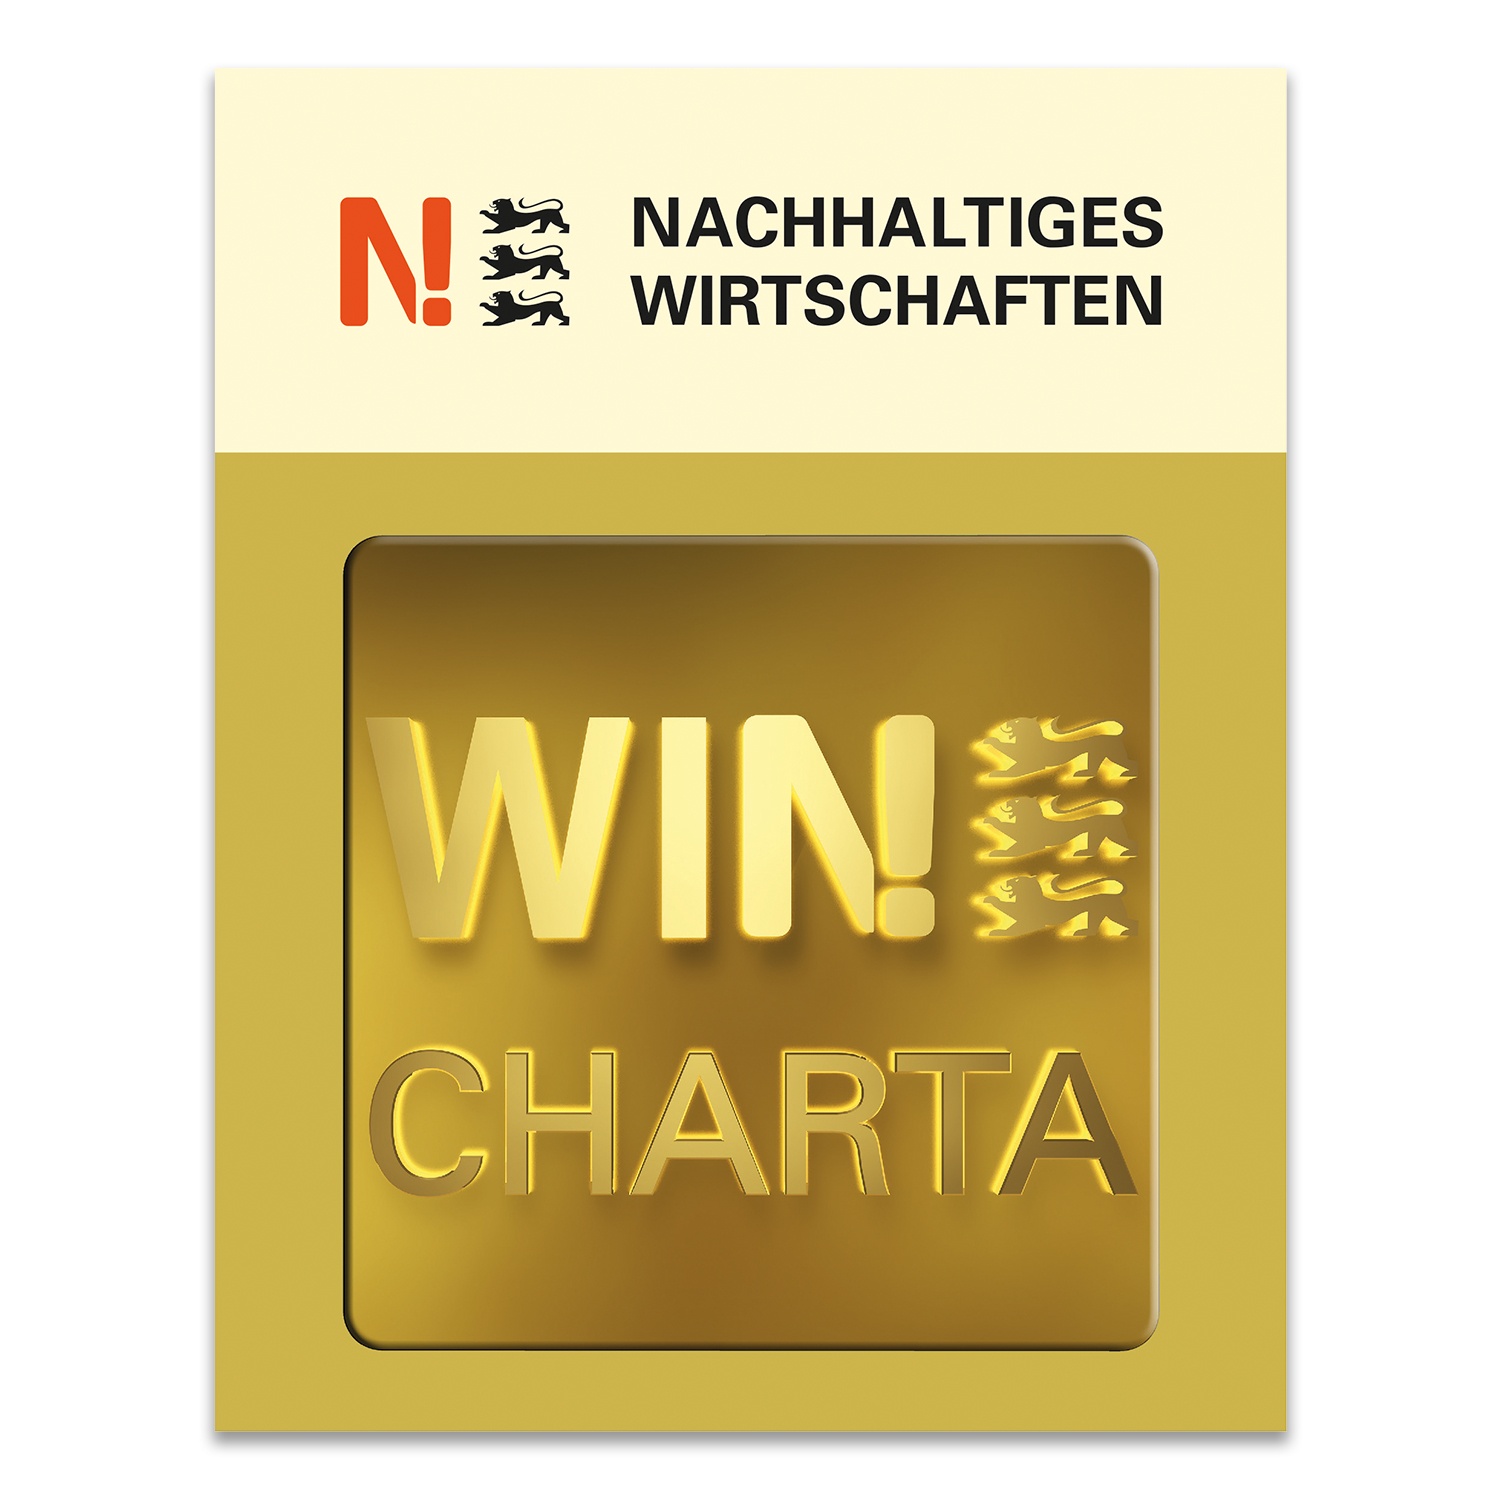 Seit November 2021 ist die e.systeme21 GmbH aktives Mitglied der WIN-Charta und verpflichtet sich mit weiteren Unternehmen aus Baden-Württemberg zur Nachhaltigkeit.